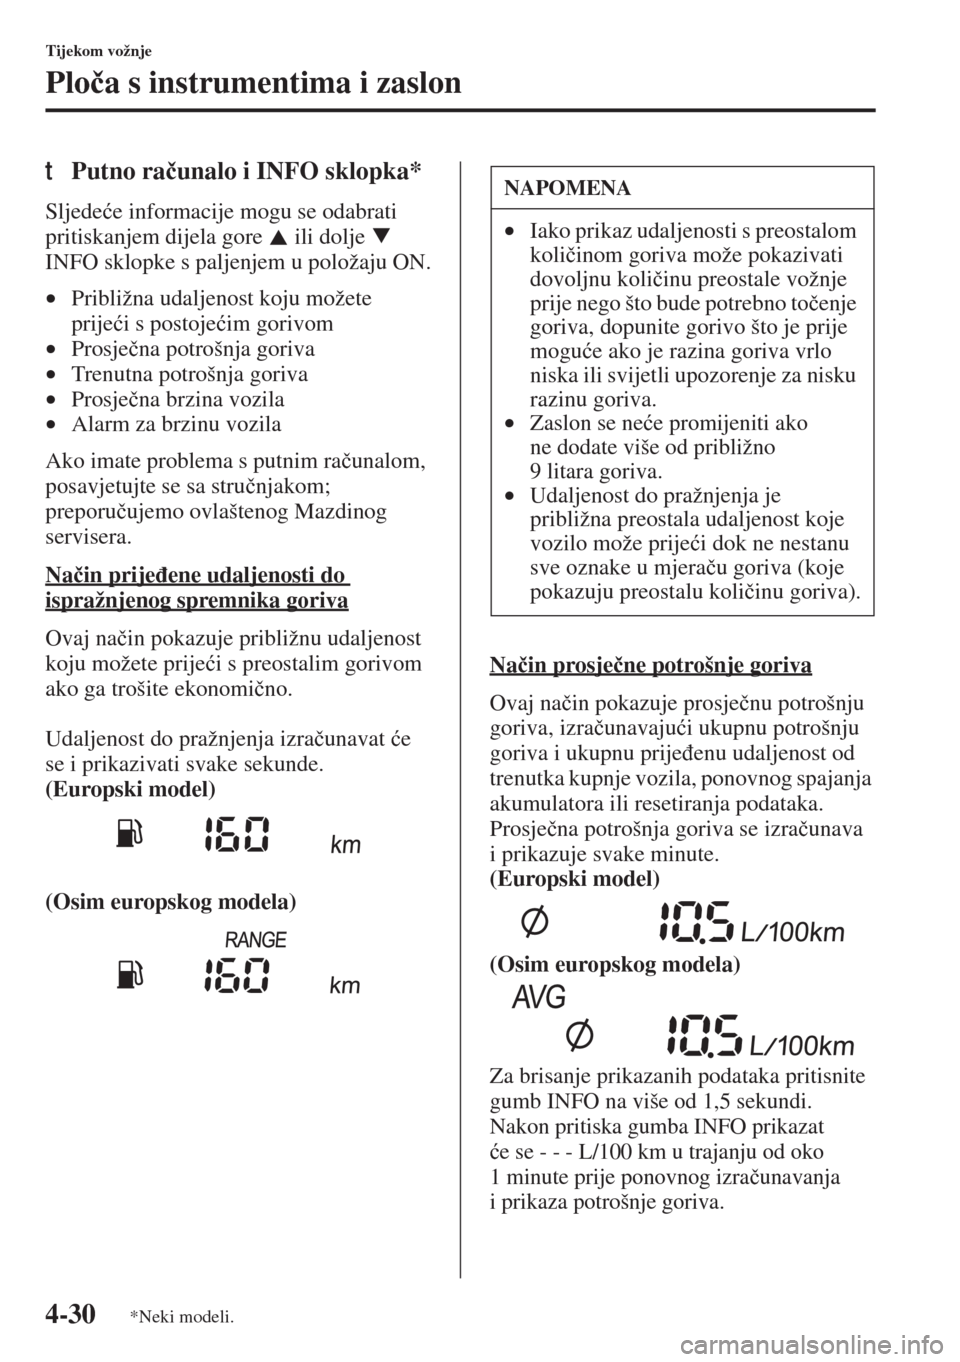 MAZDA MODEL 3 HATCHBACK 2015  Upute za uporabu (in Crotian) 4-30
Tijekom vožnje
Plo�þa s instrumentima i zaslon
tPutno ra�þunalo i INFO sklopka*
Sljede�üe informacije mogu se odabrati 
pritiskanjem dijela gore   ili dolje   
INFO sklopke s paljenjem u polo